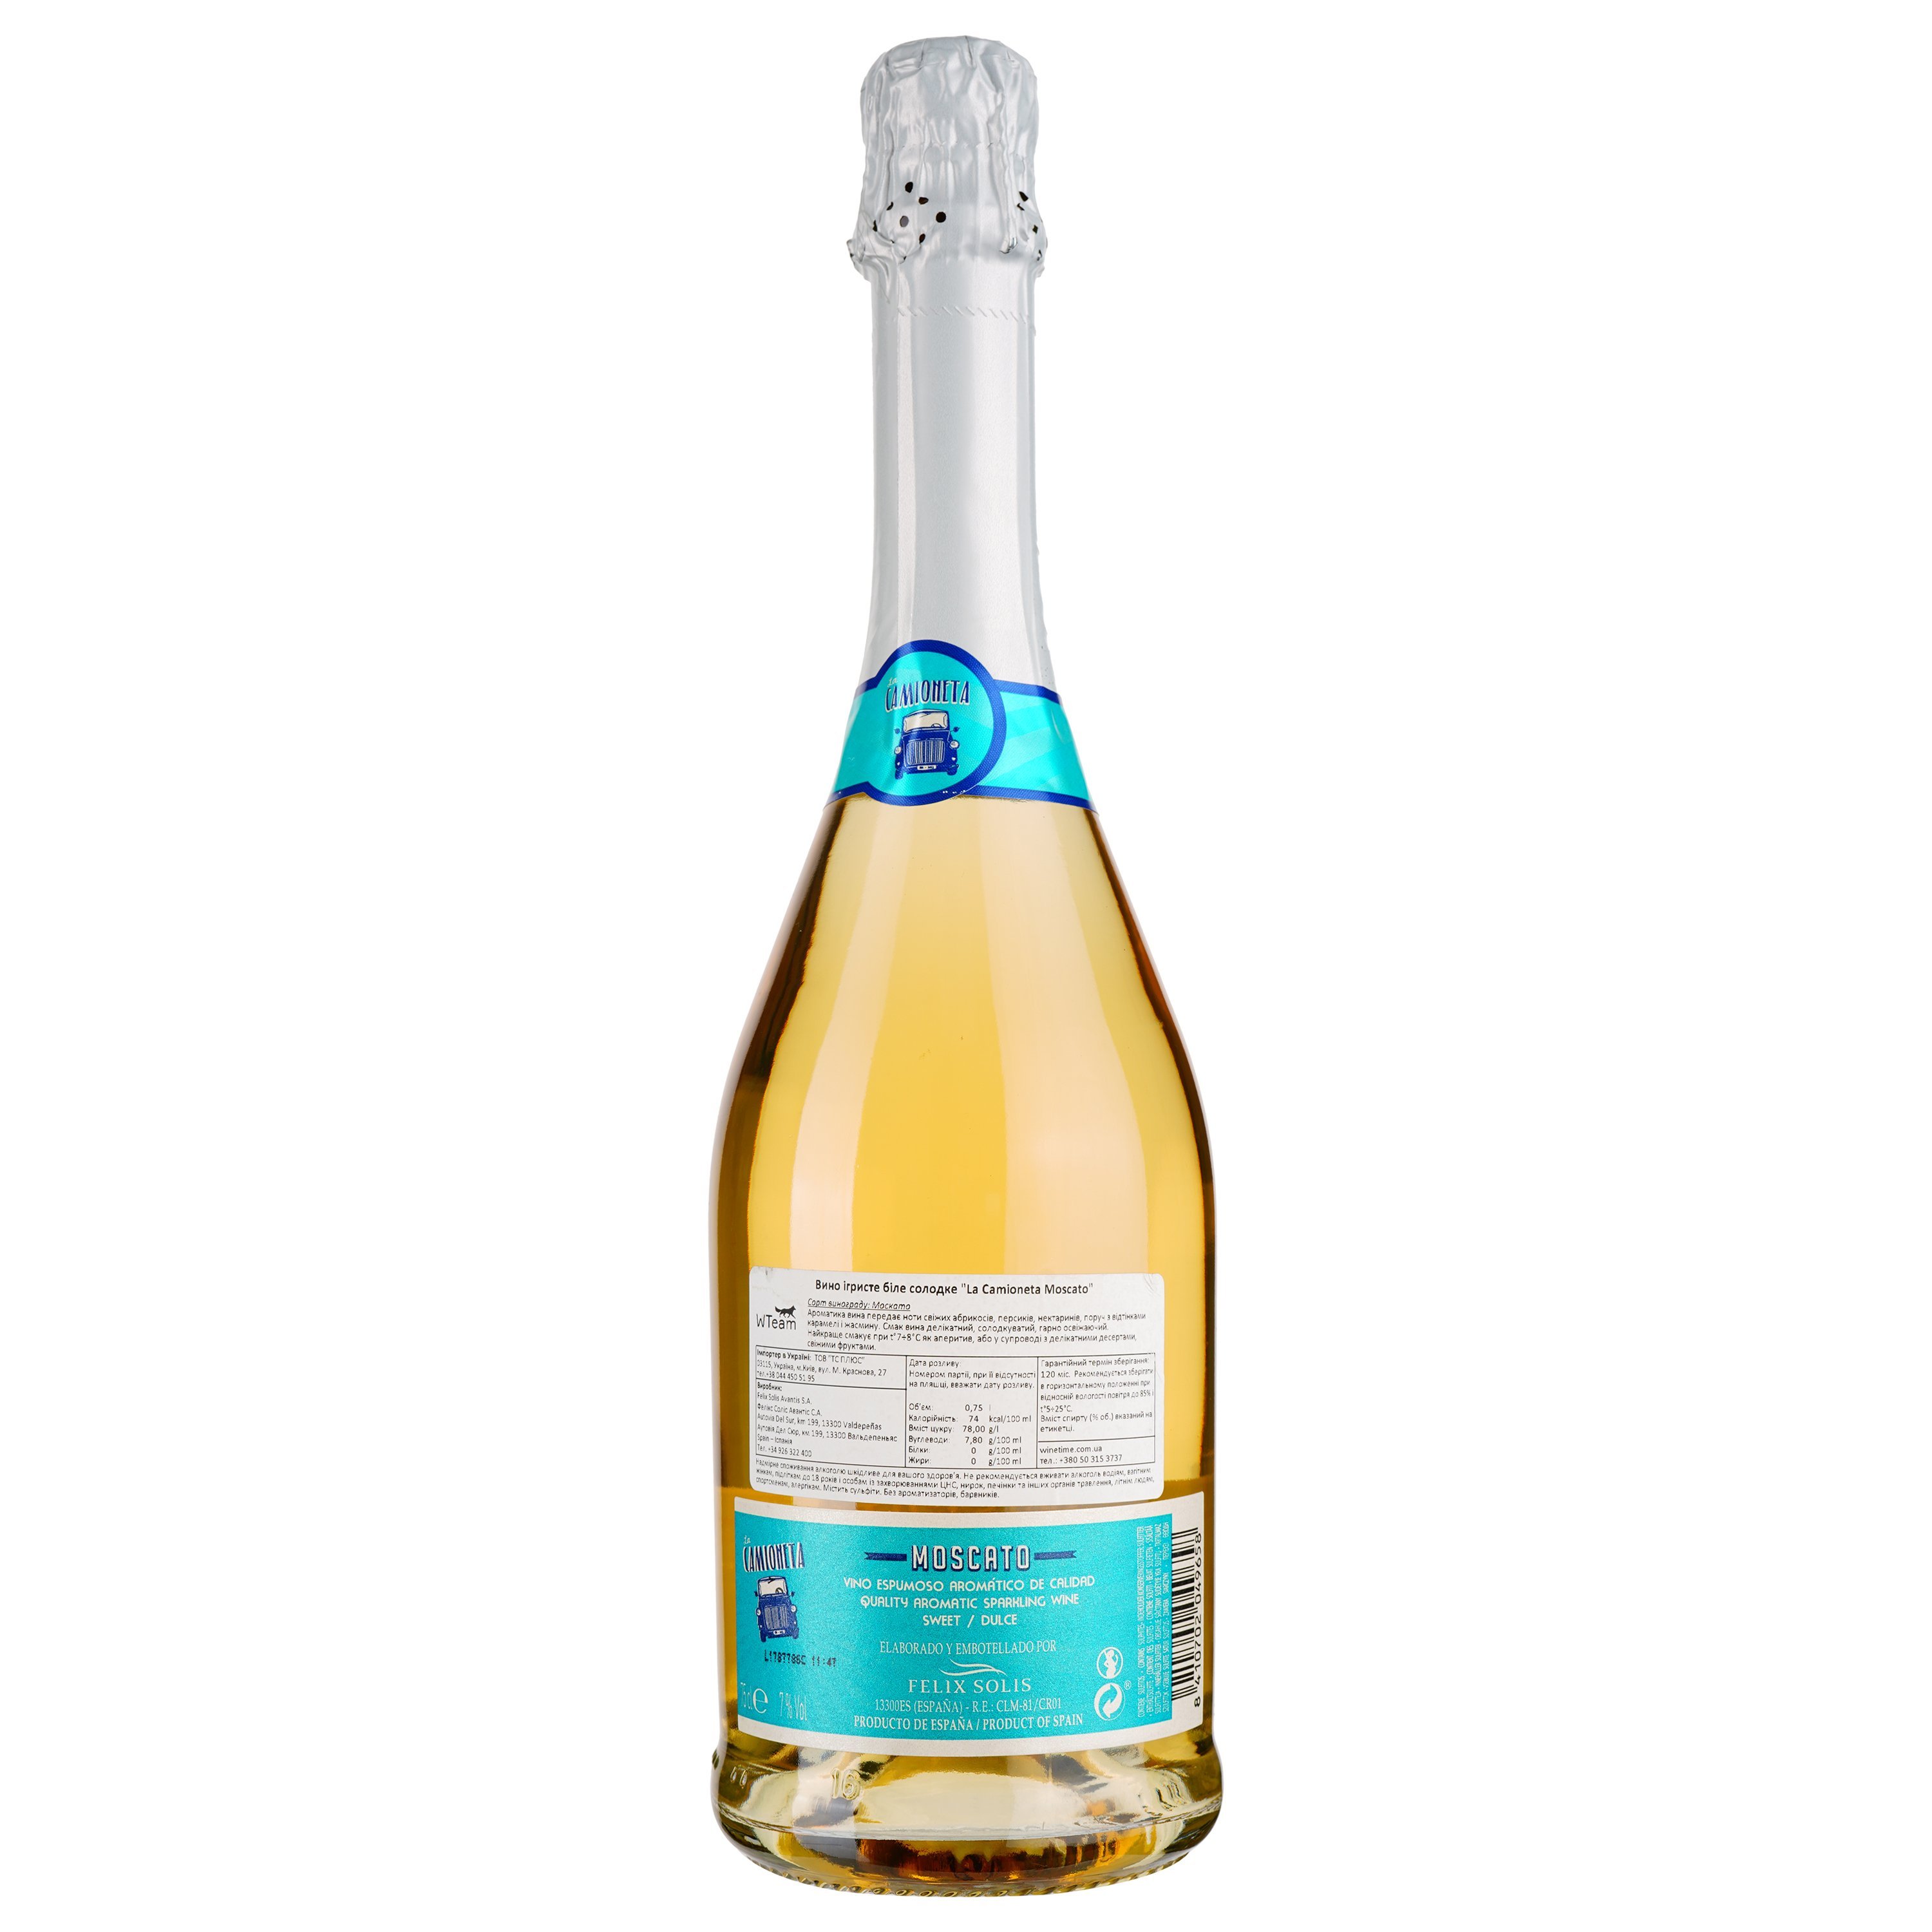 Ігристе вино Felix Solis Avantis La Camioneta Moscato, біле, солодке, 7%, 0,75 л - фото 2